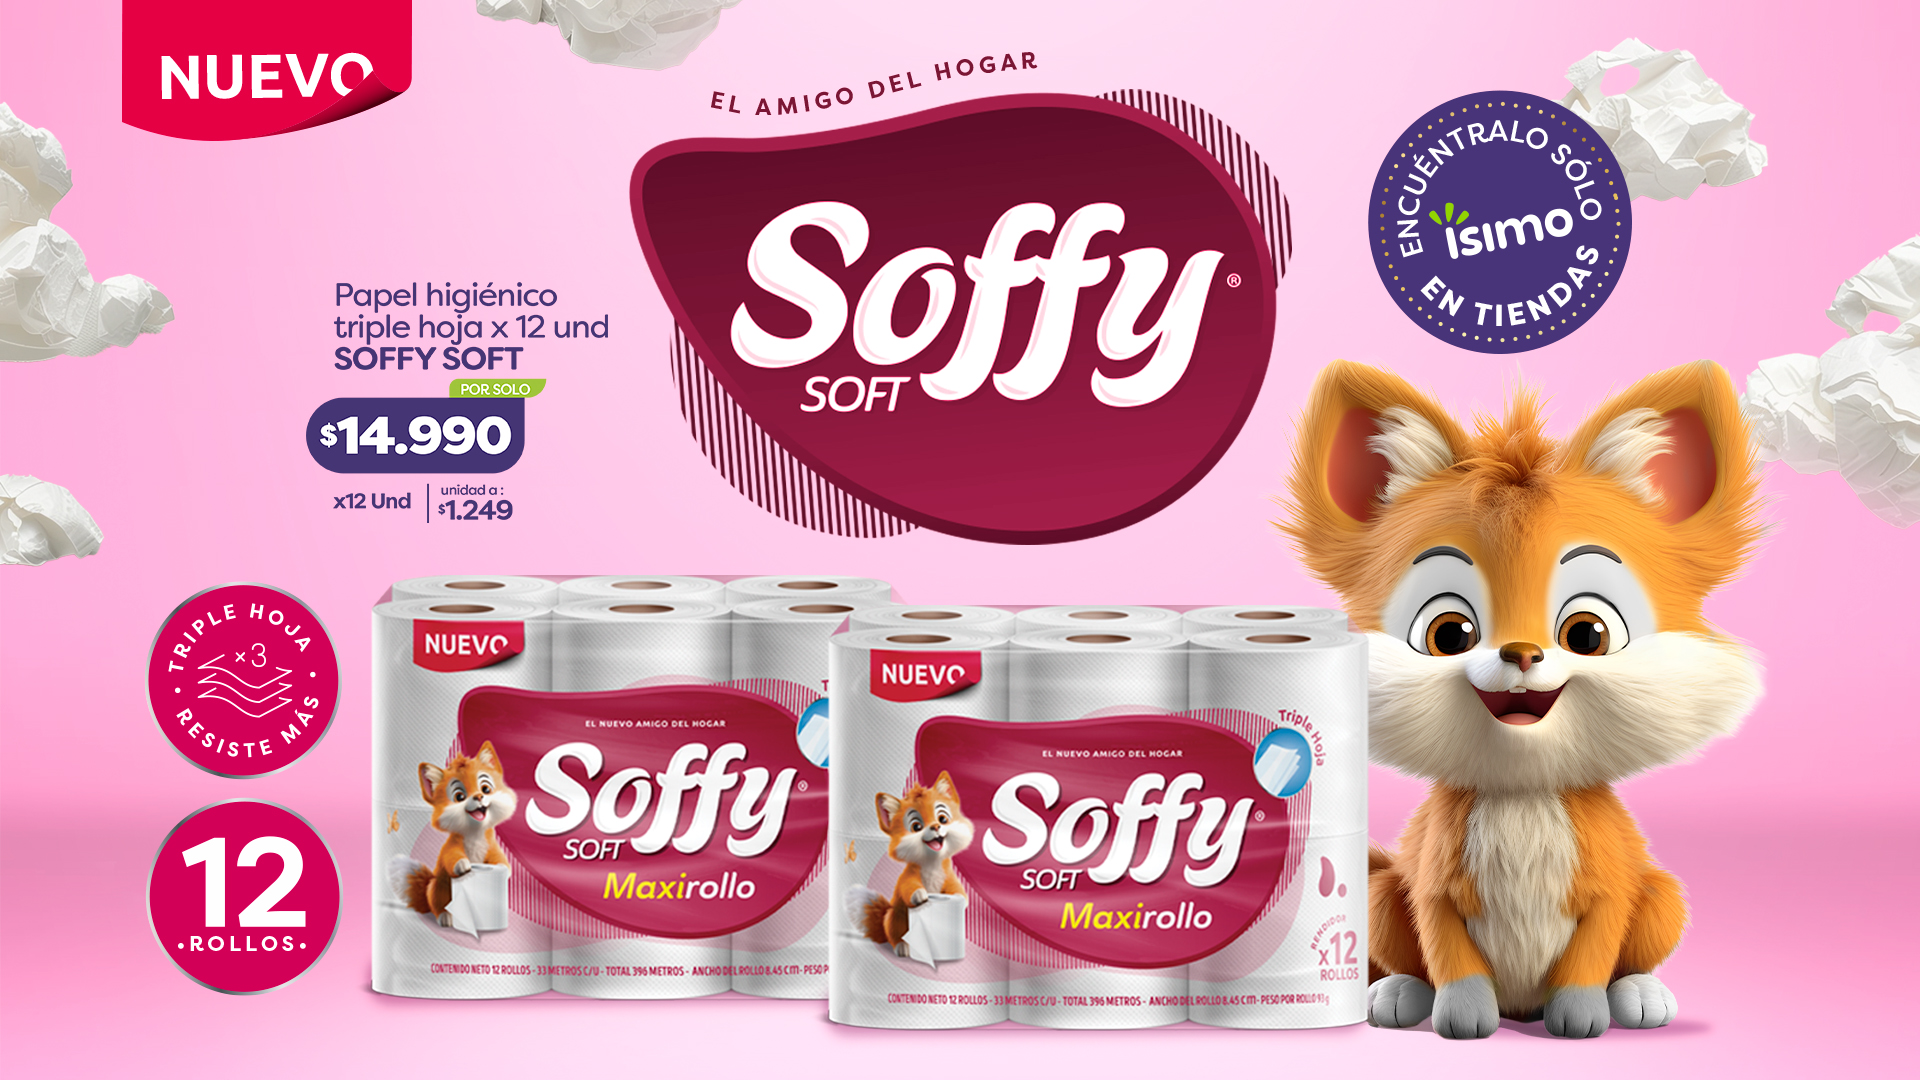 Soffy Soft